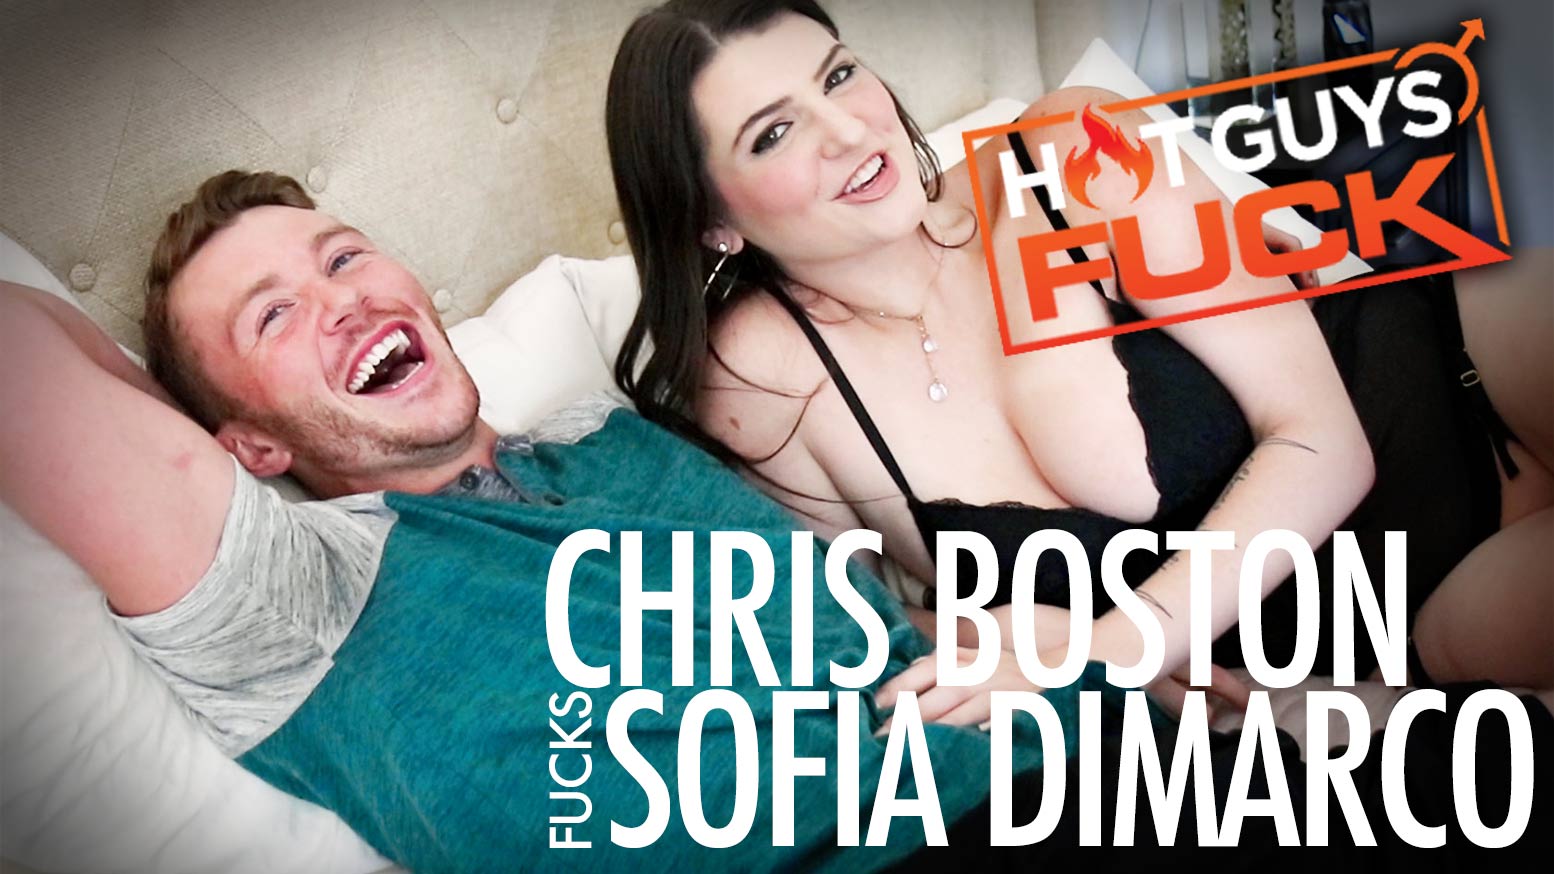 HotGuysFUCK: Chris Boston Fucks Sofia Dimarco - WAYBIG